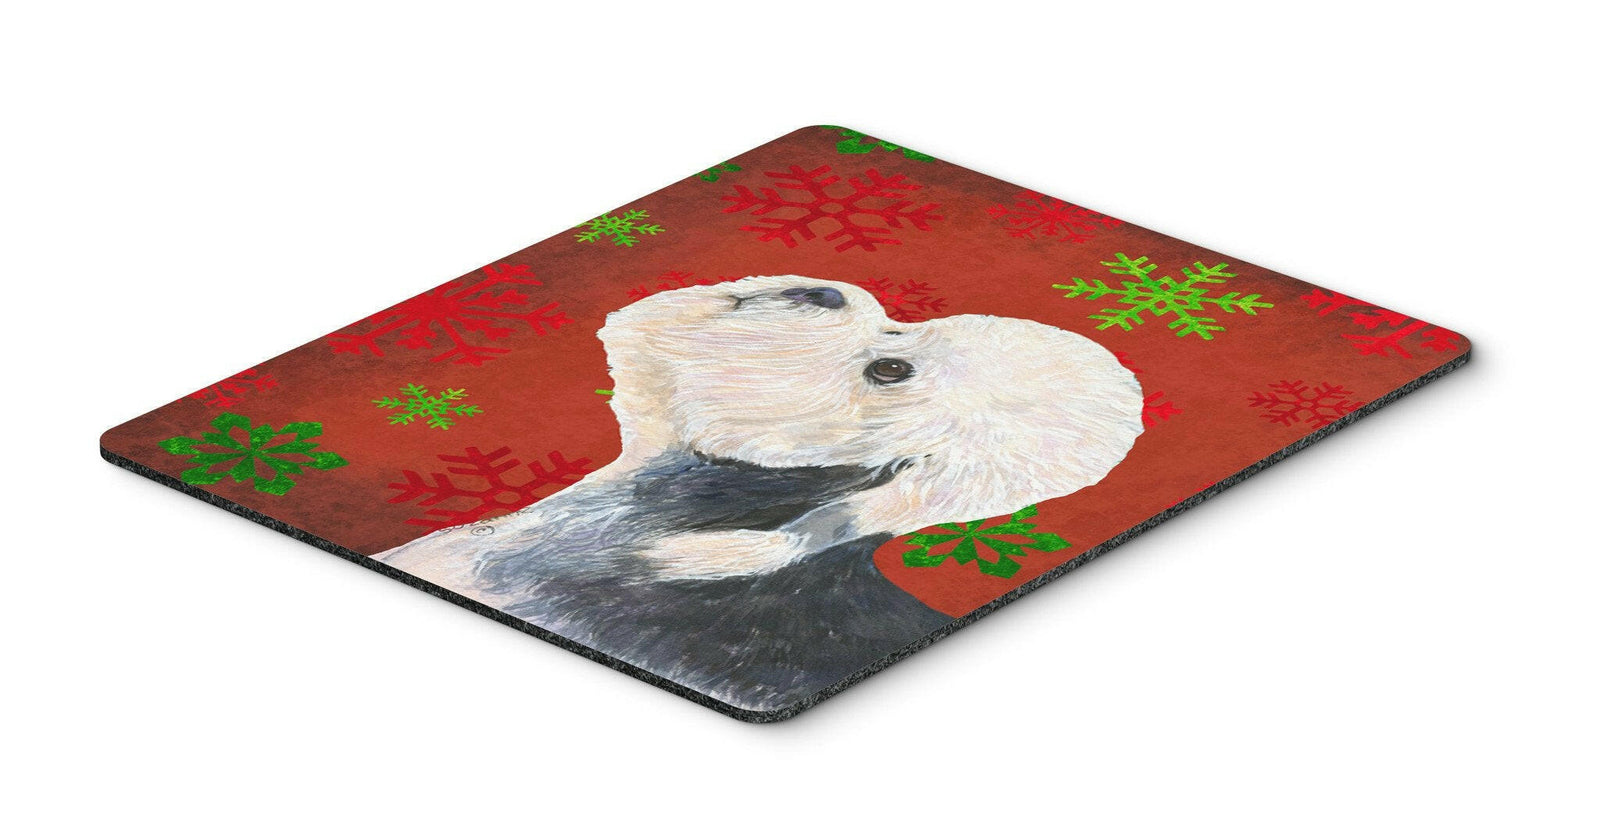 Dandie Dinmont Terrier Snowflakes Christmas Mouse Pad, Hot Pad or Trivet by Caroline's Treasures